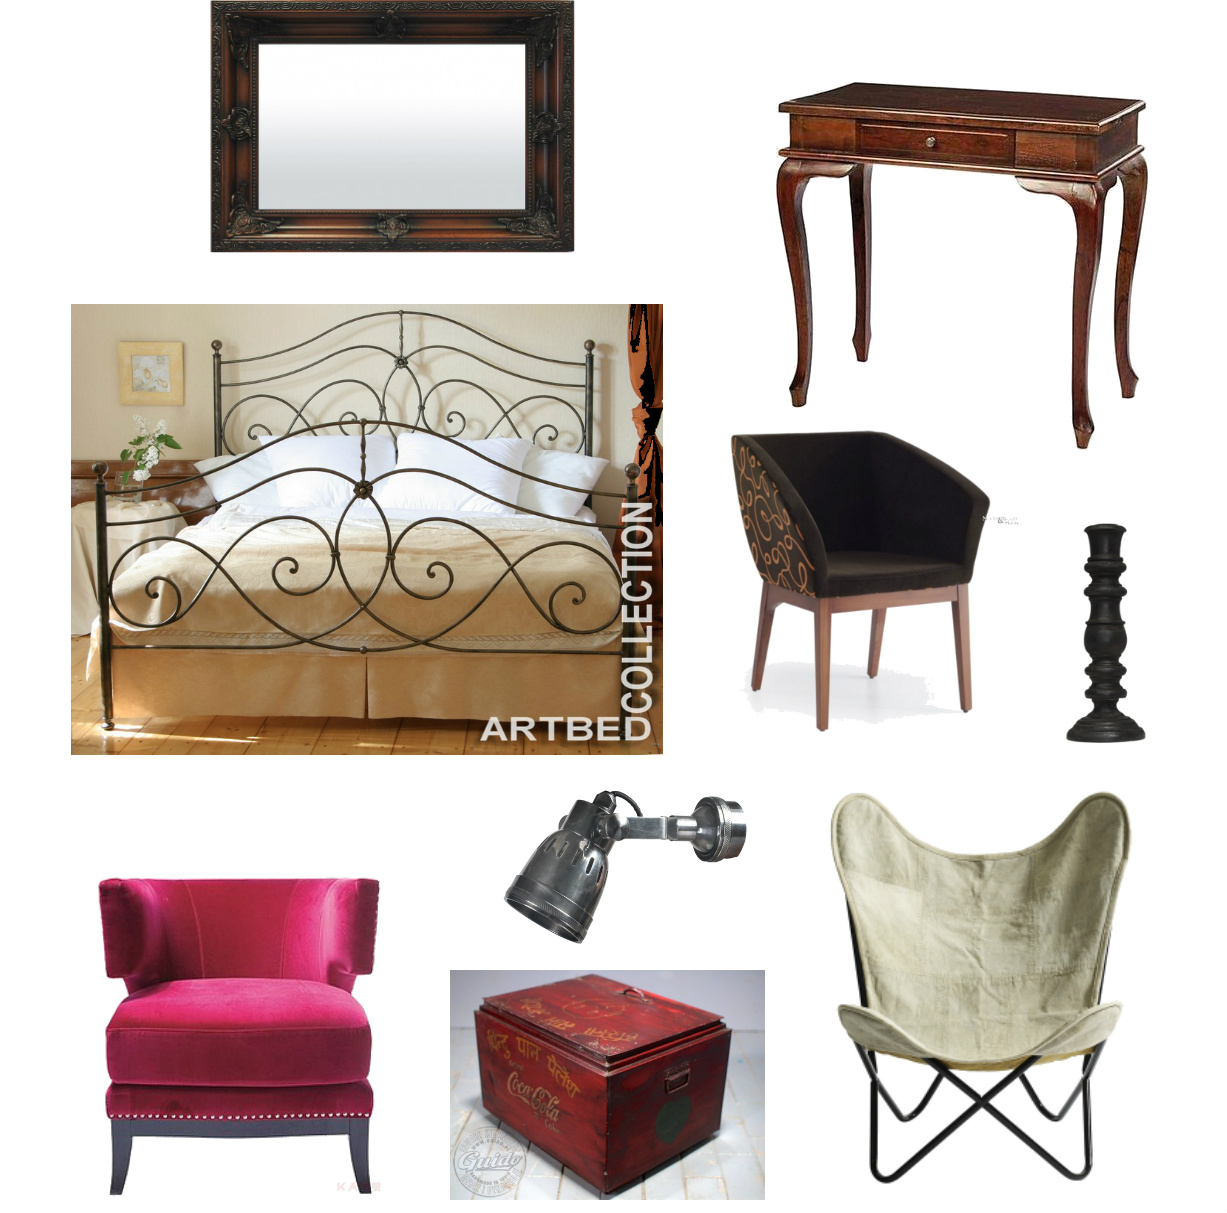 aranżacja sypialni,eklektyczna sypialnia,produkty do sypialni w lofcie,styowe lustro,stylowa konsolka,kute łóżko,brązowo-czarny fotelik,czarny świecznik,różowy fotel,industrialny kinkiet,czerwony kufer,czerwona skrzynia,nowoczesny fotel,fotel motyl